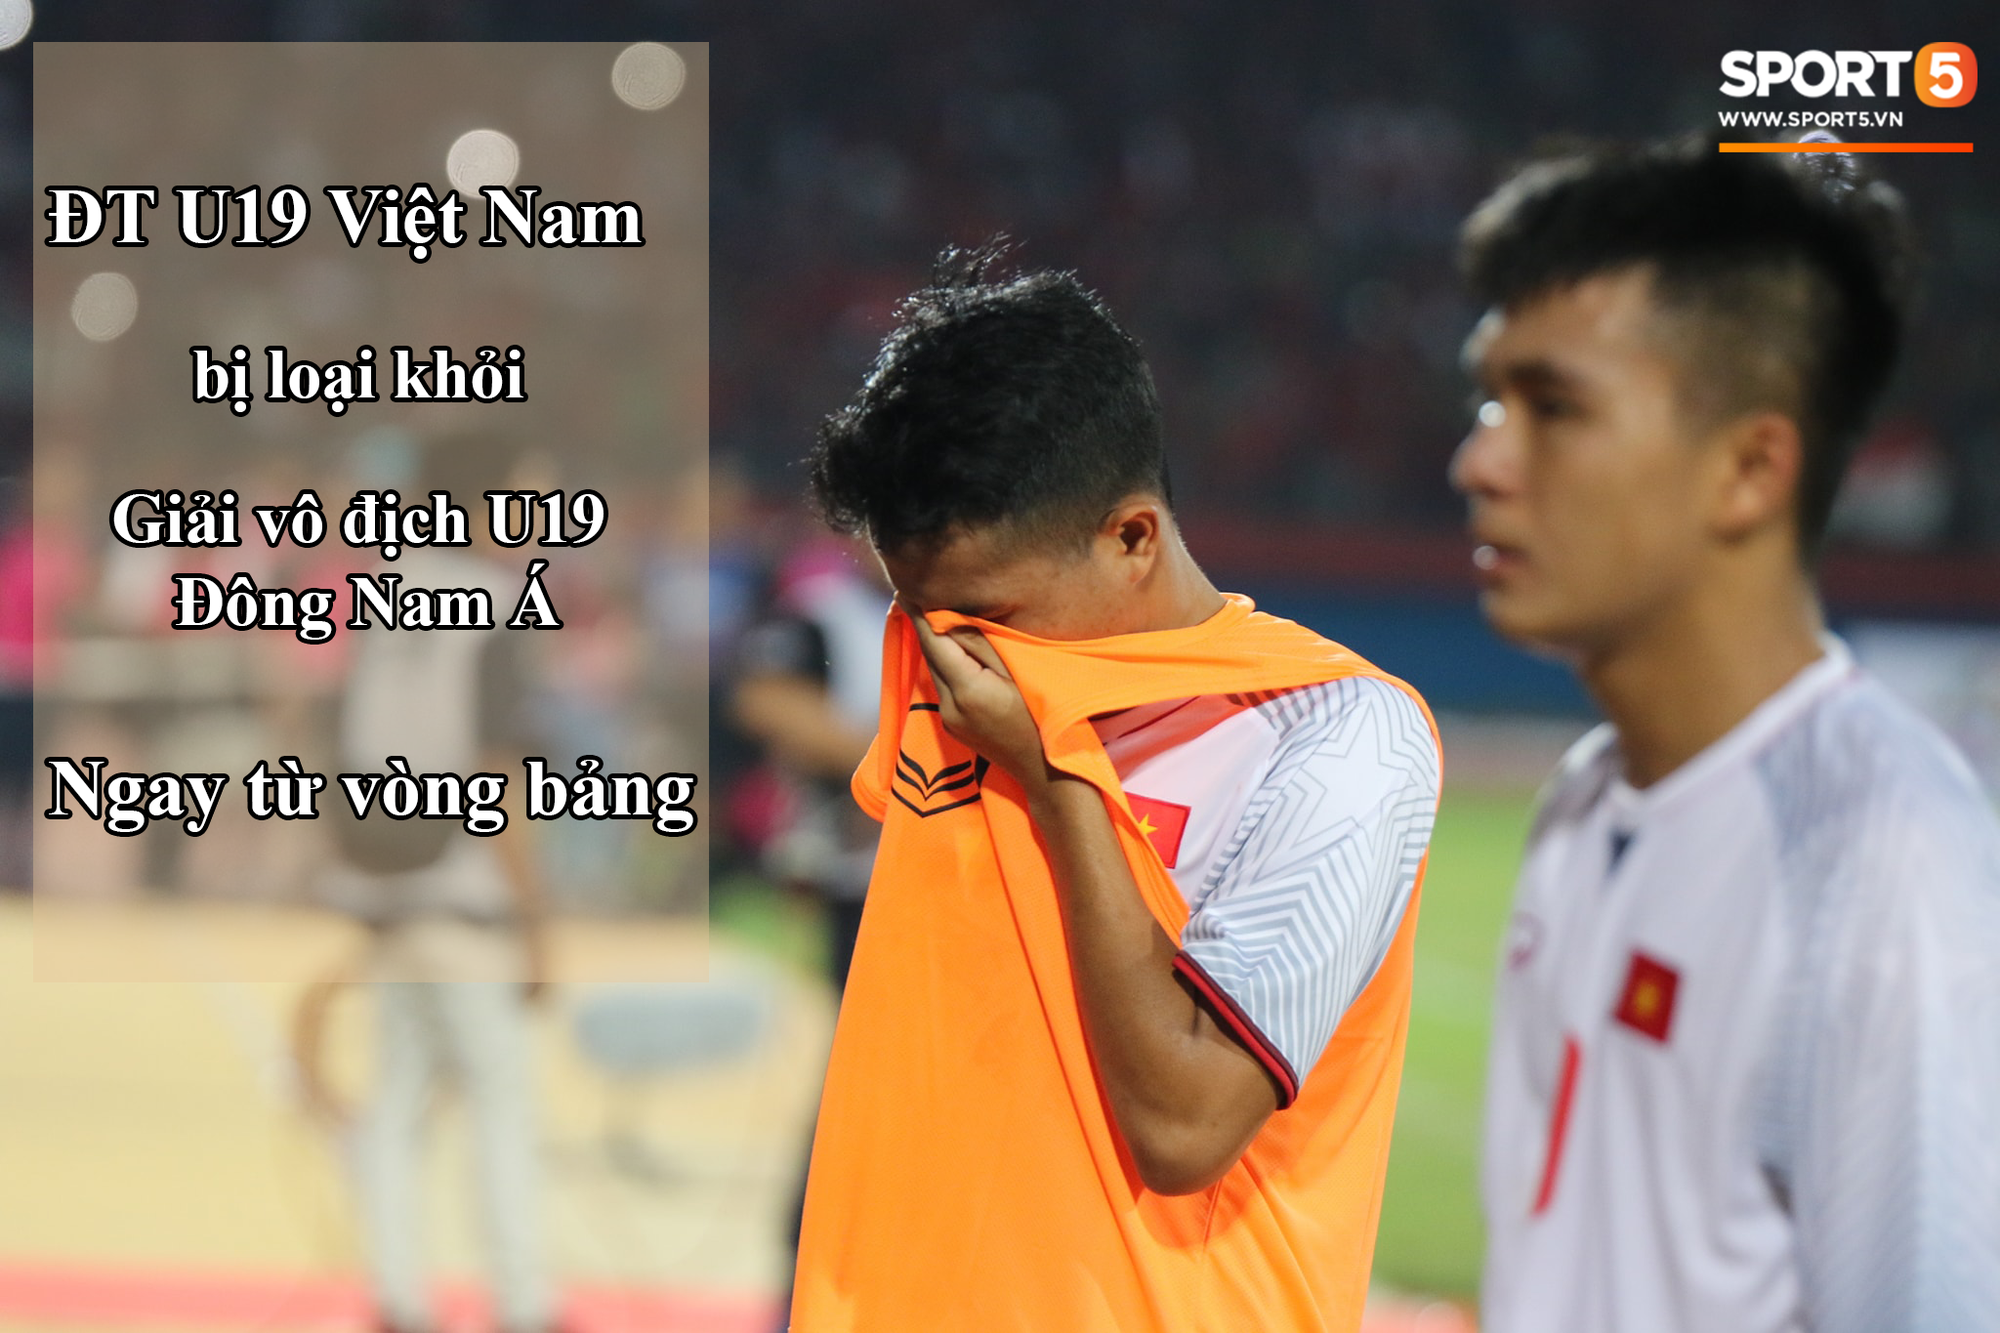 Những sự kiện bóng đá Việt đáng chú ý trong thời gian diễn ra World Cup  - Ảnh 1.